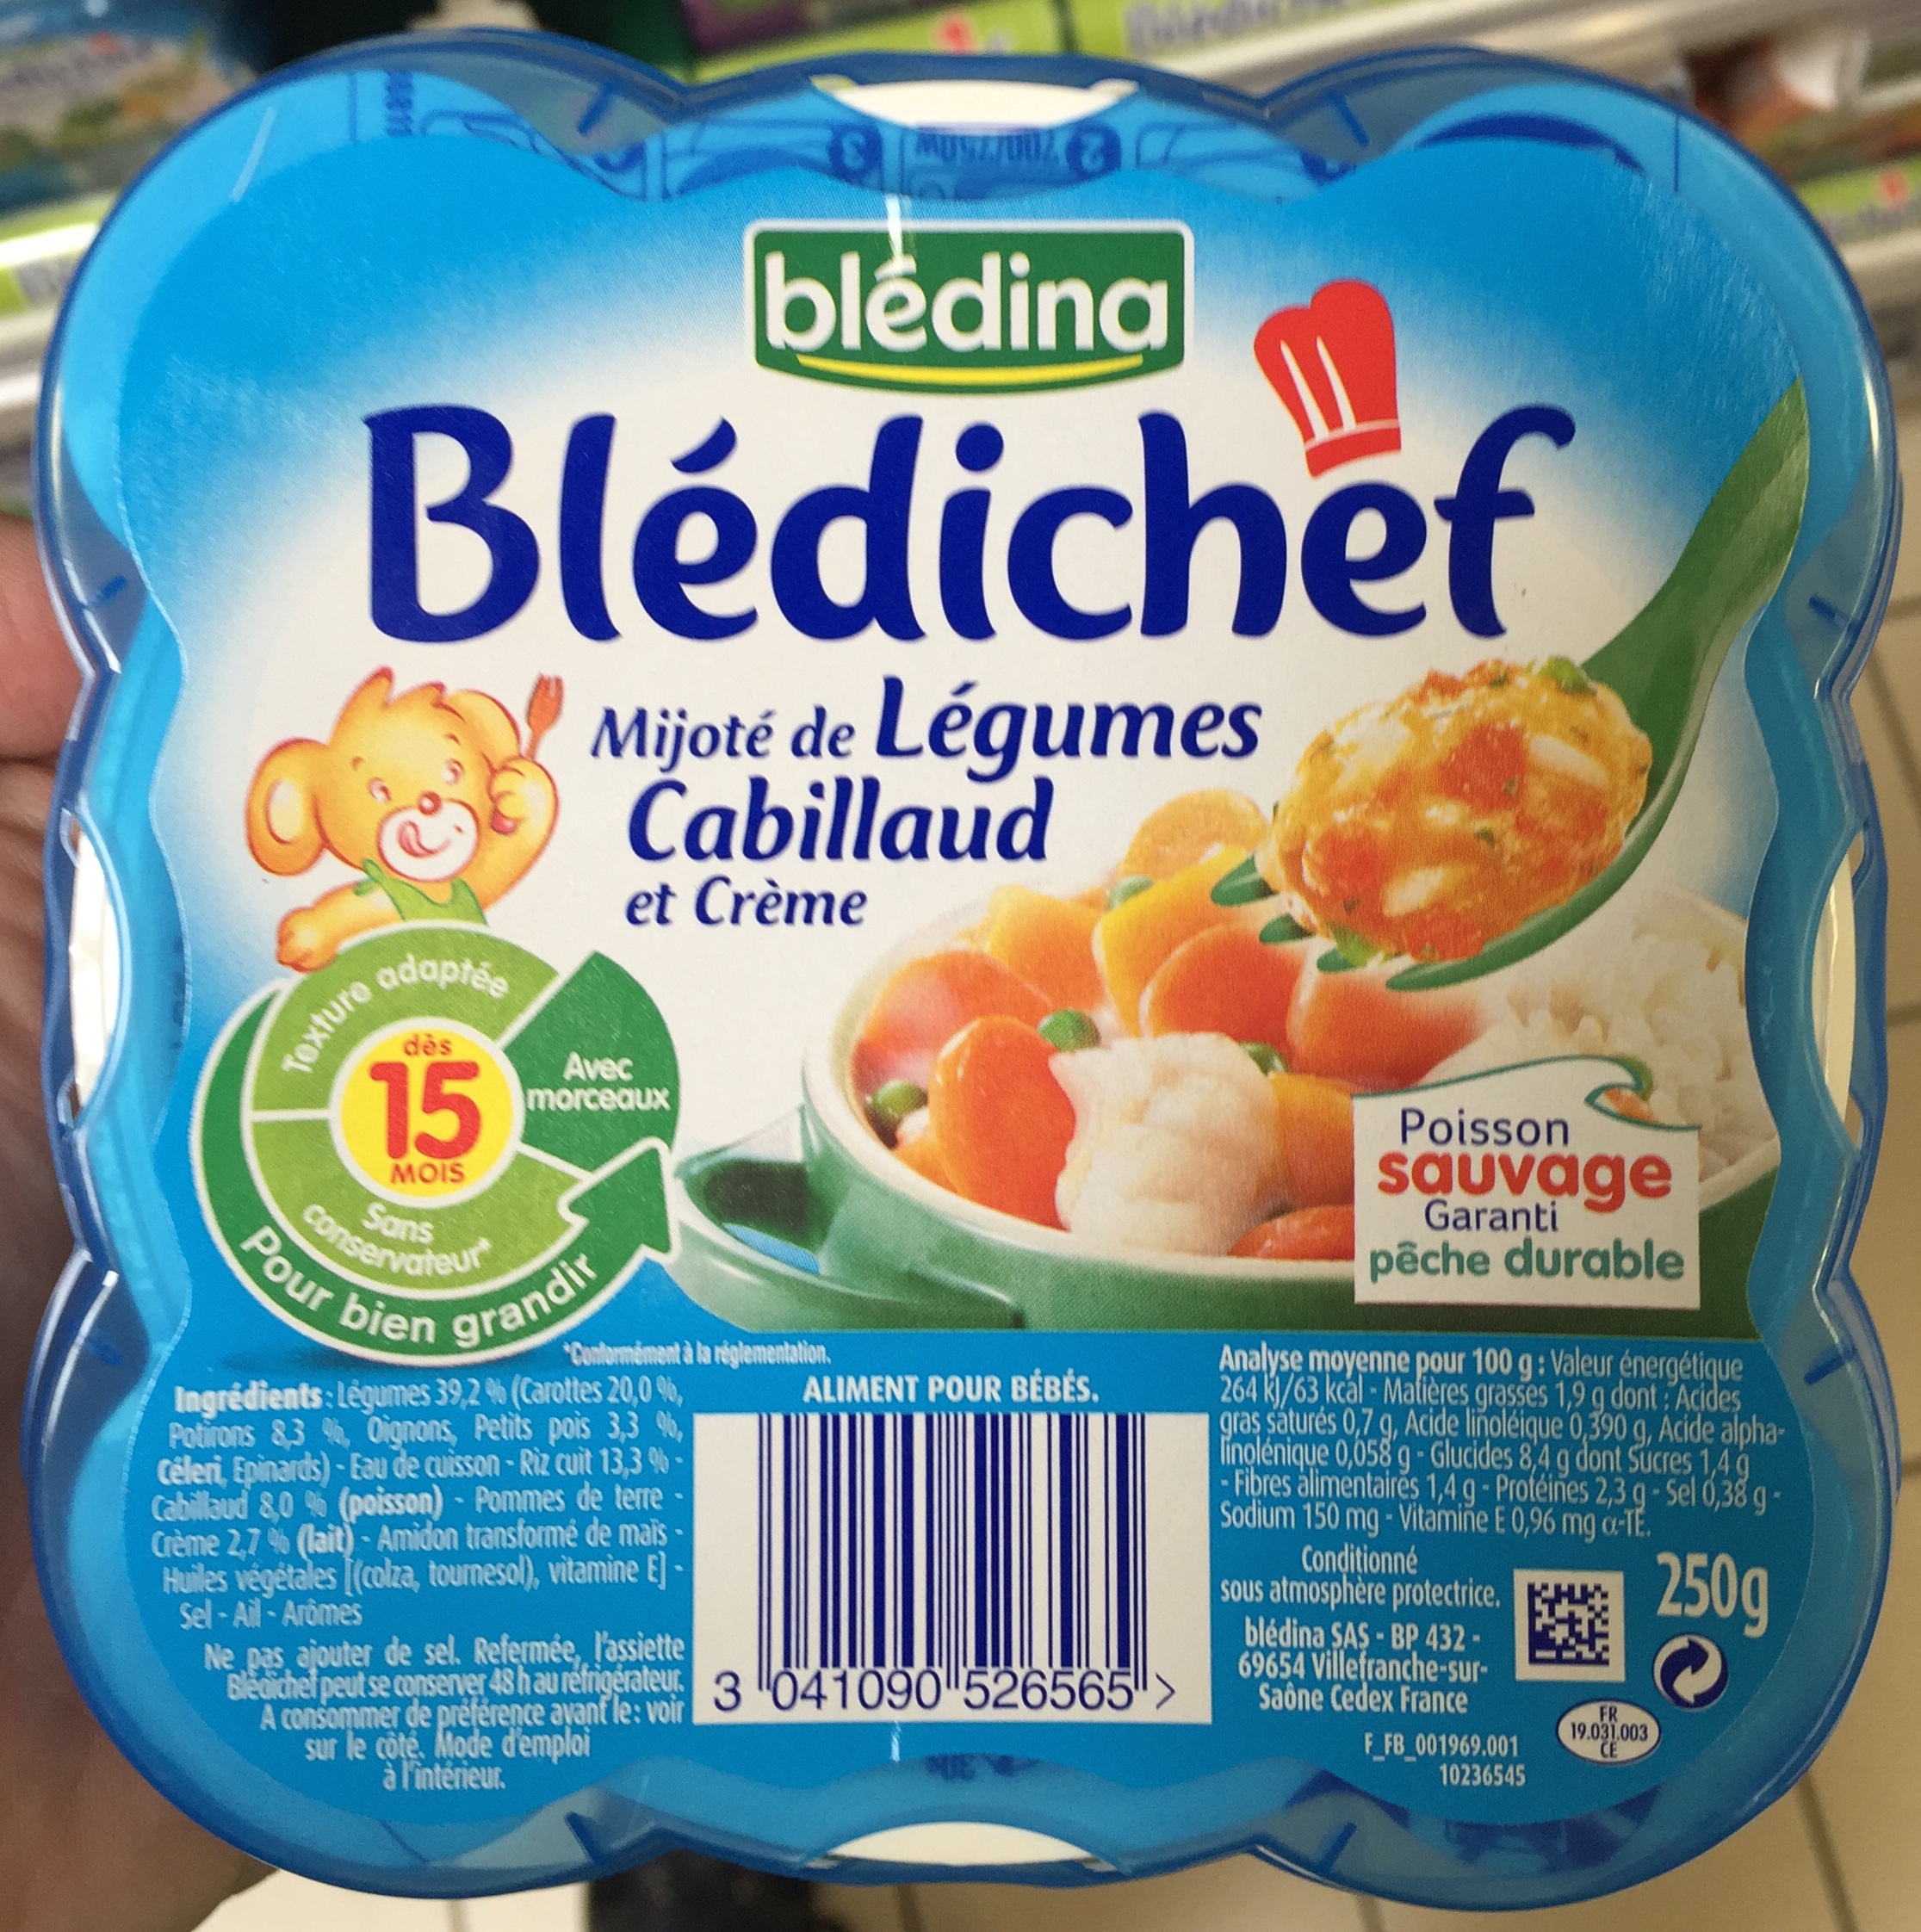 Blédichef Mijoté de Légumes Cabillaud et Crème - Product - fr